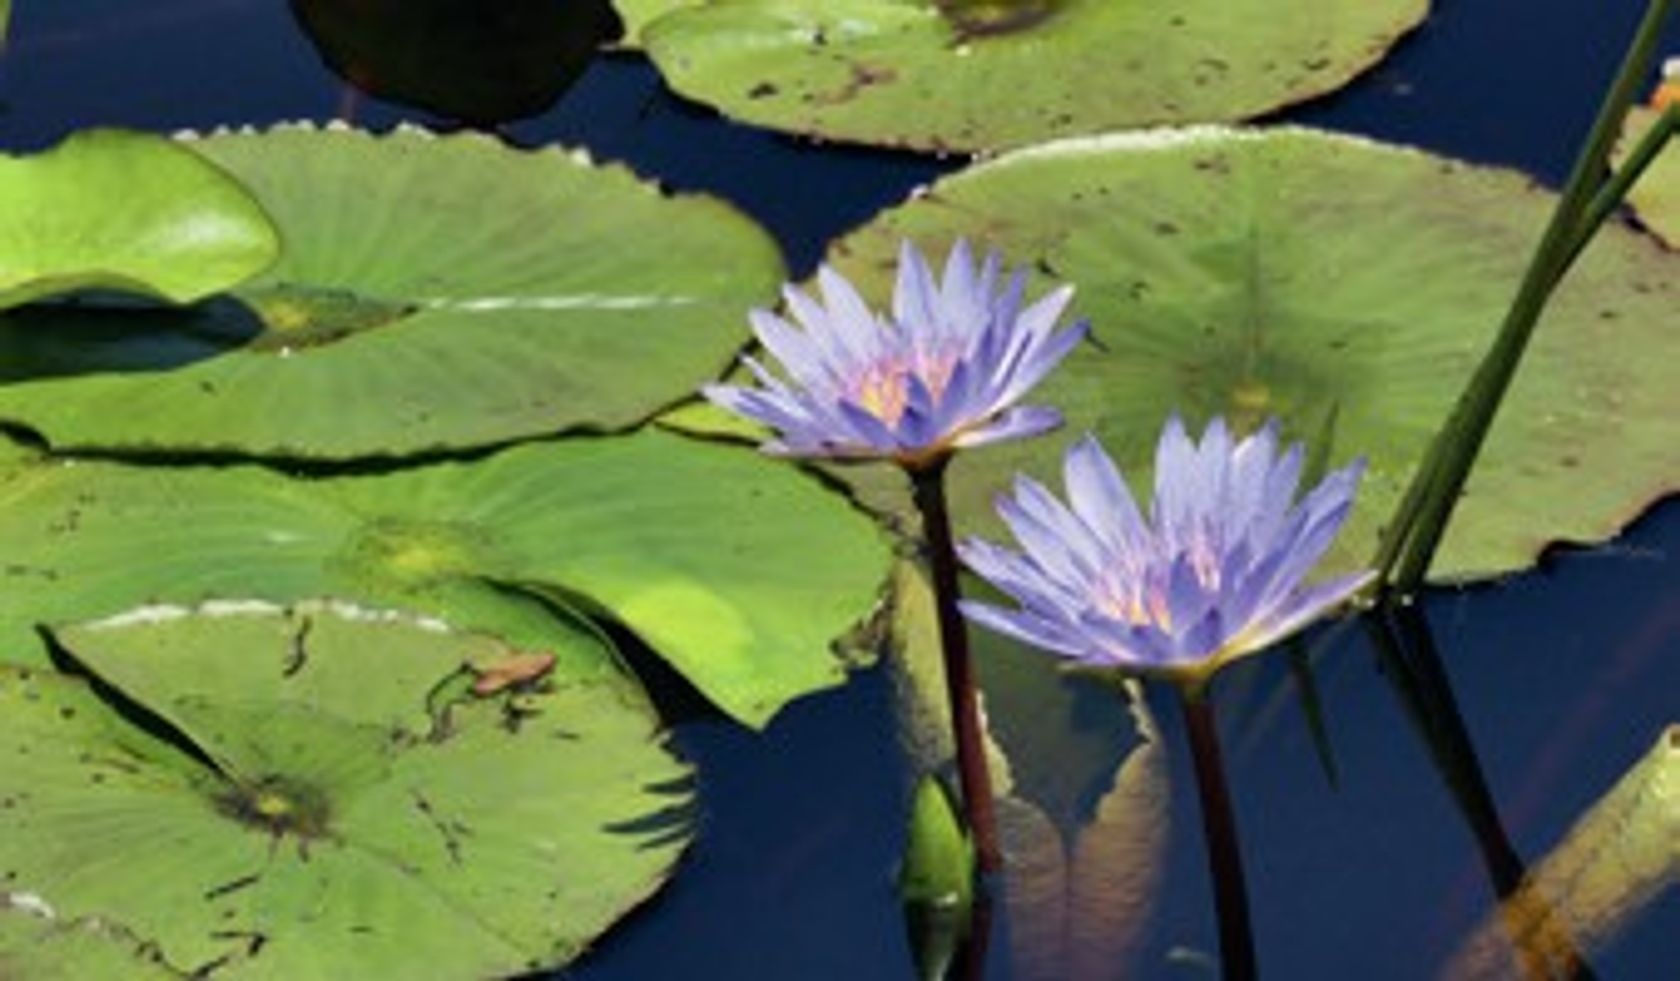 Seerose oder Lotoslbume mit leicht lilafarbenen Blüten und den auf dem Wasser schwimmenden Blättern.